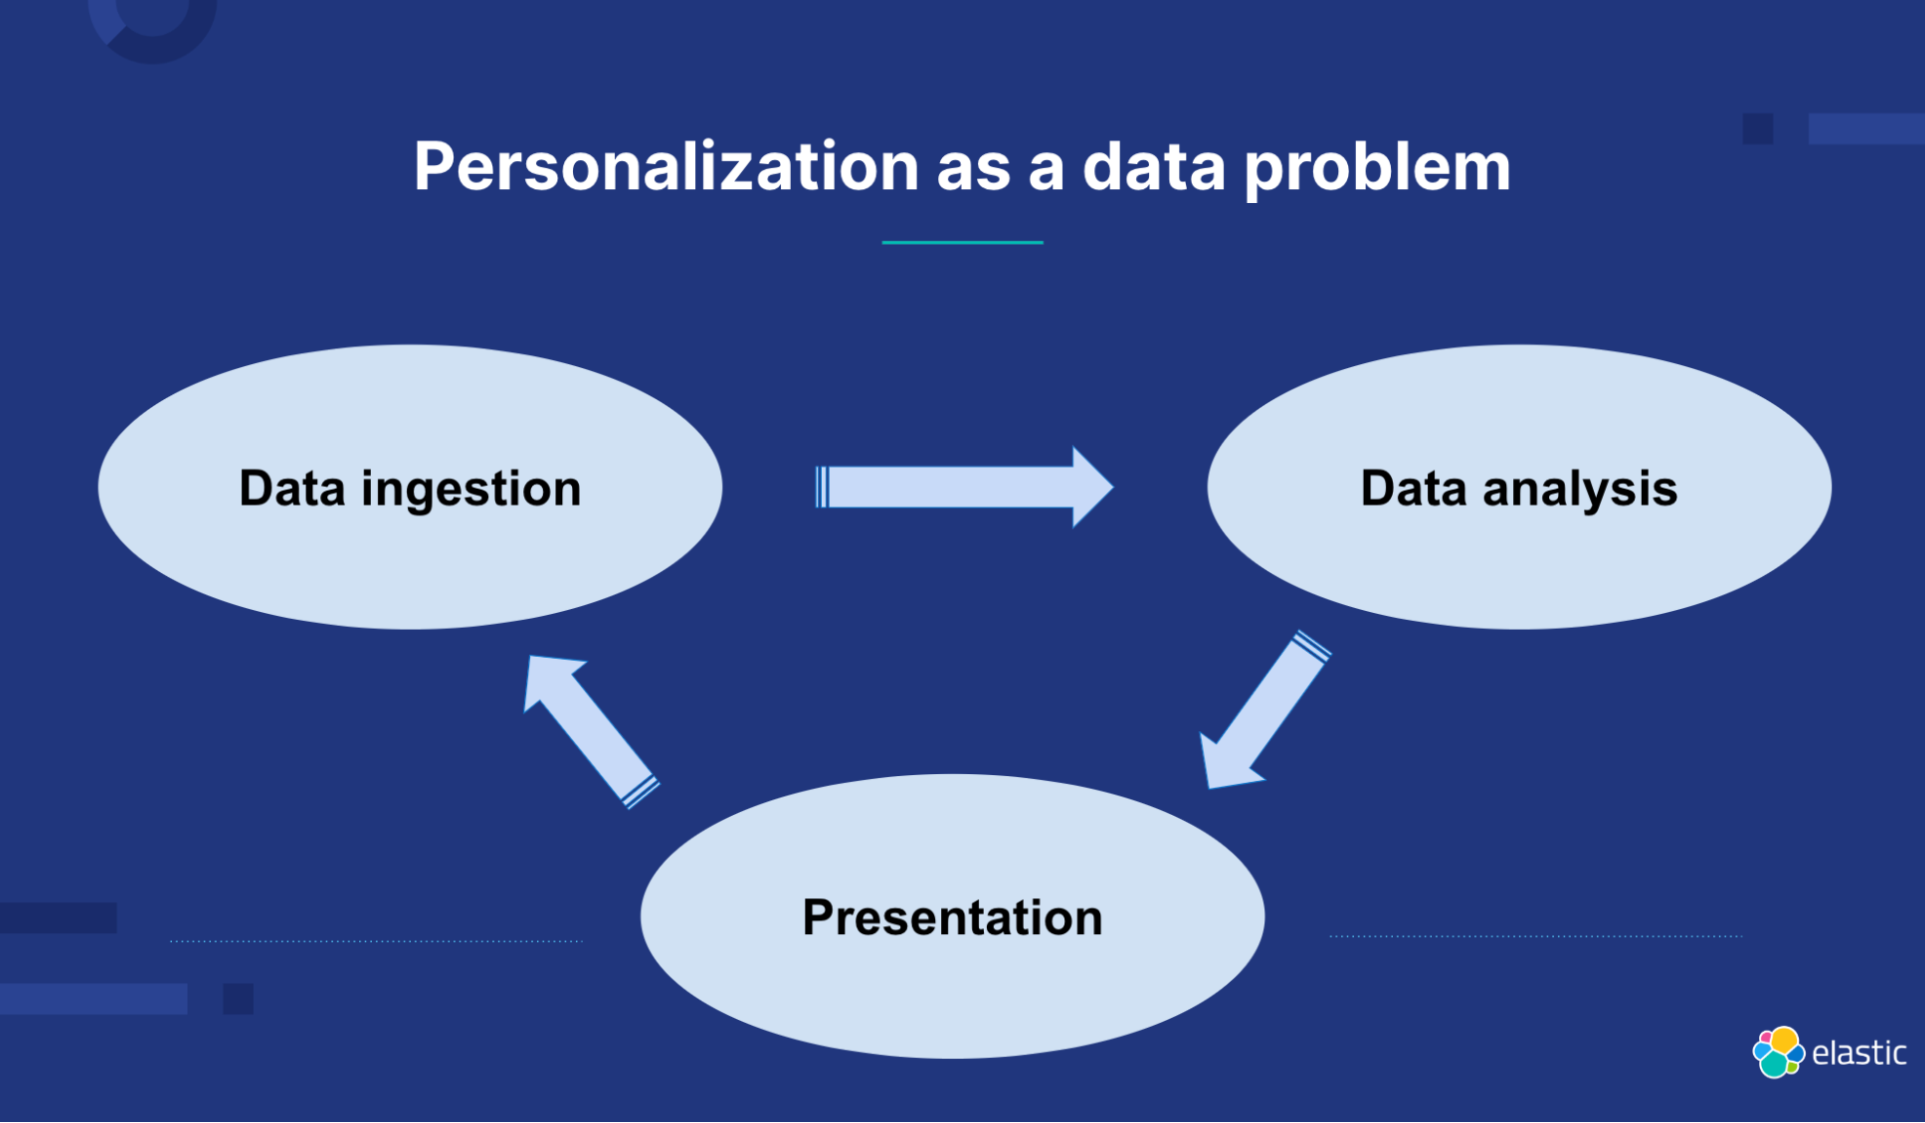 워크플로우: 데이터 문제로서의 개인 맞춤 설정